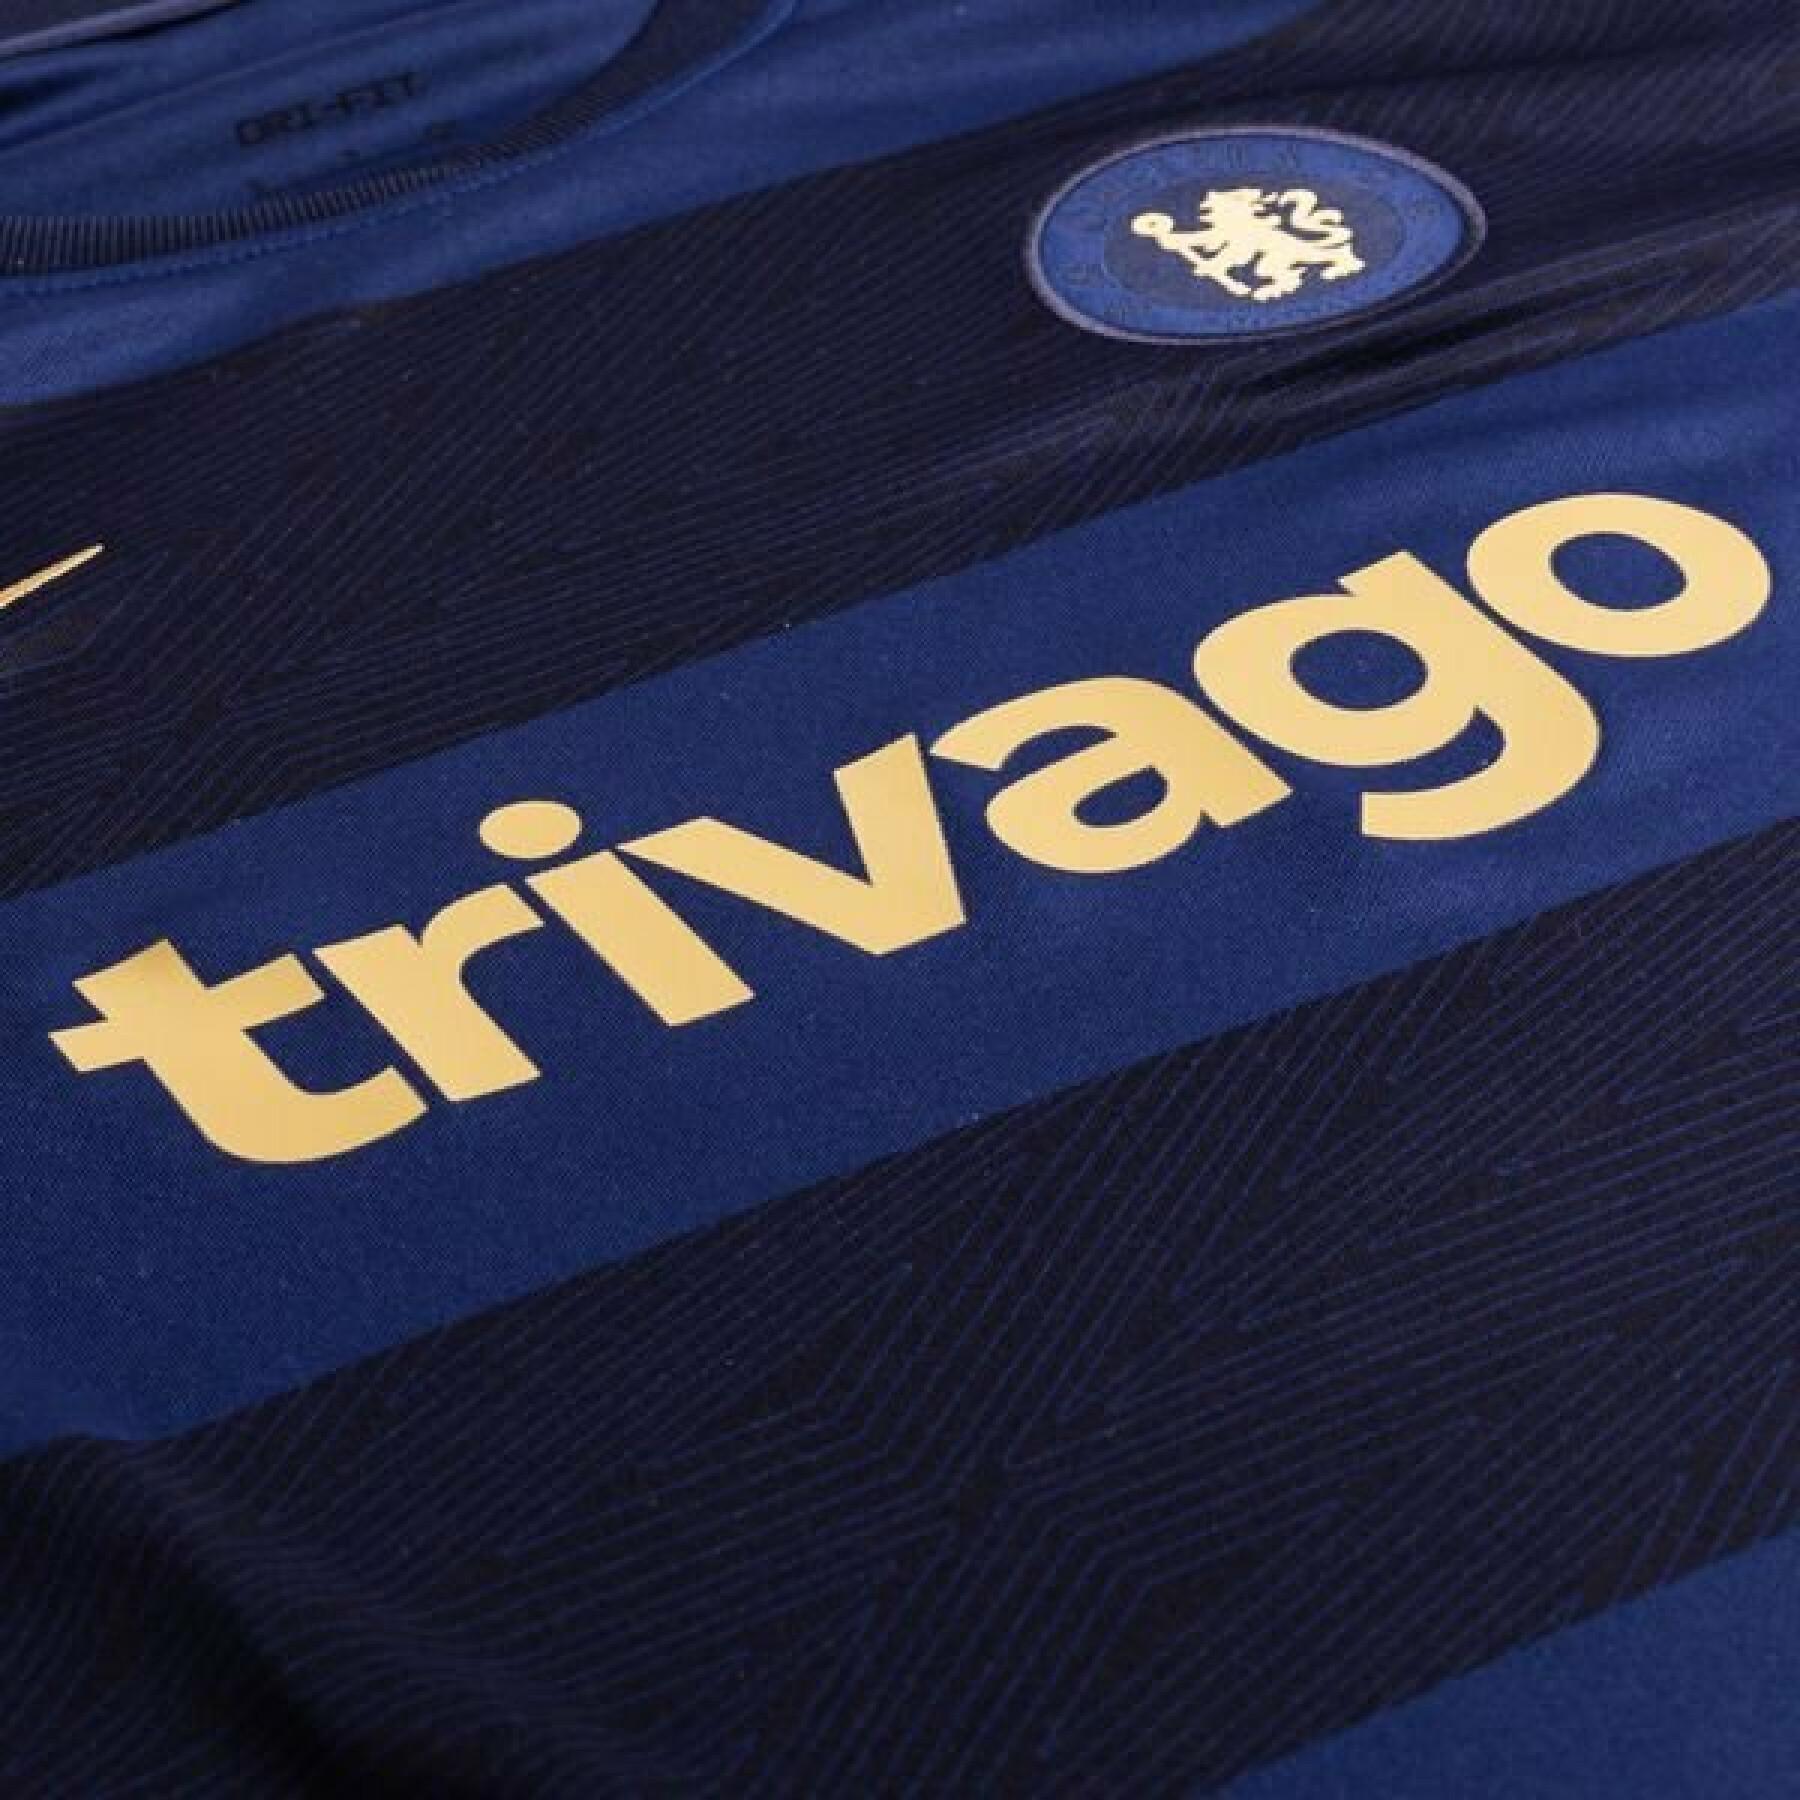 T-shirt femme Chelsea 2021/22 Dri-FIT